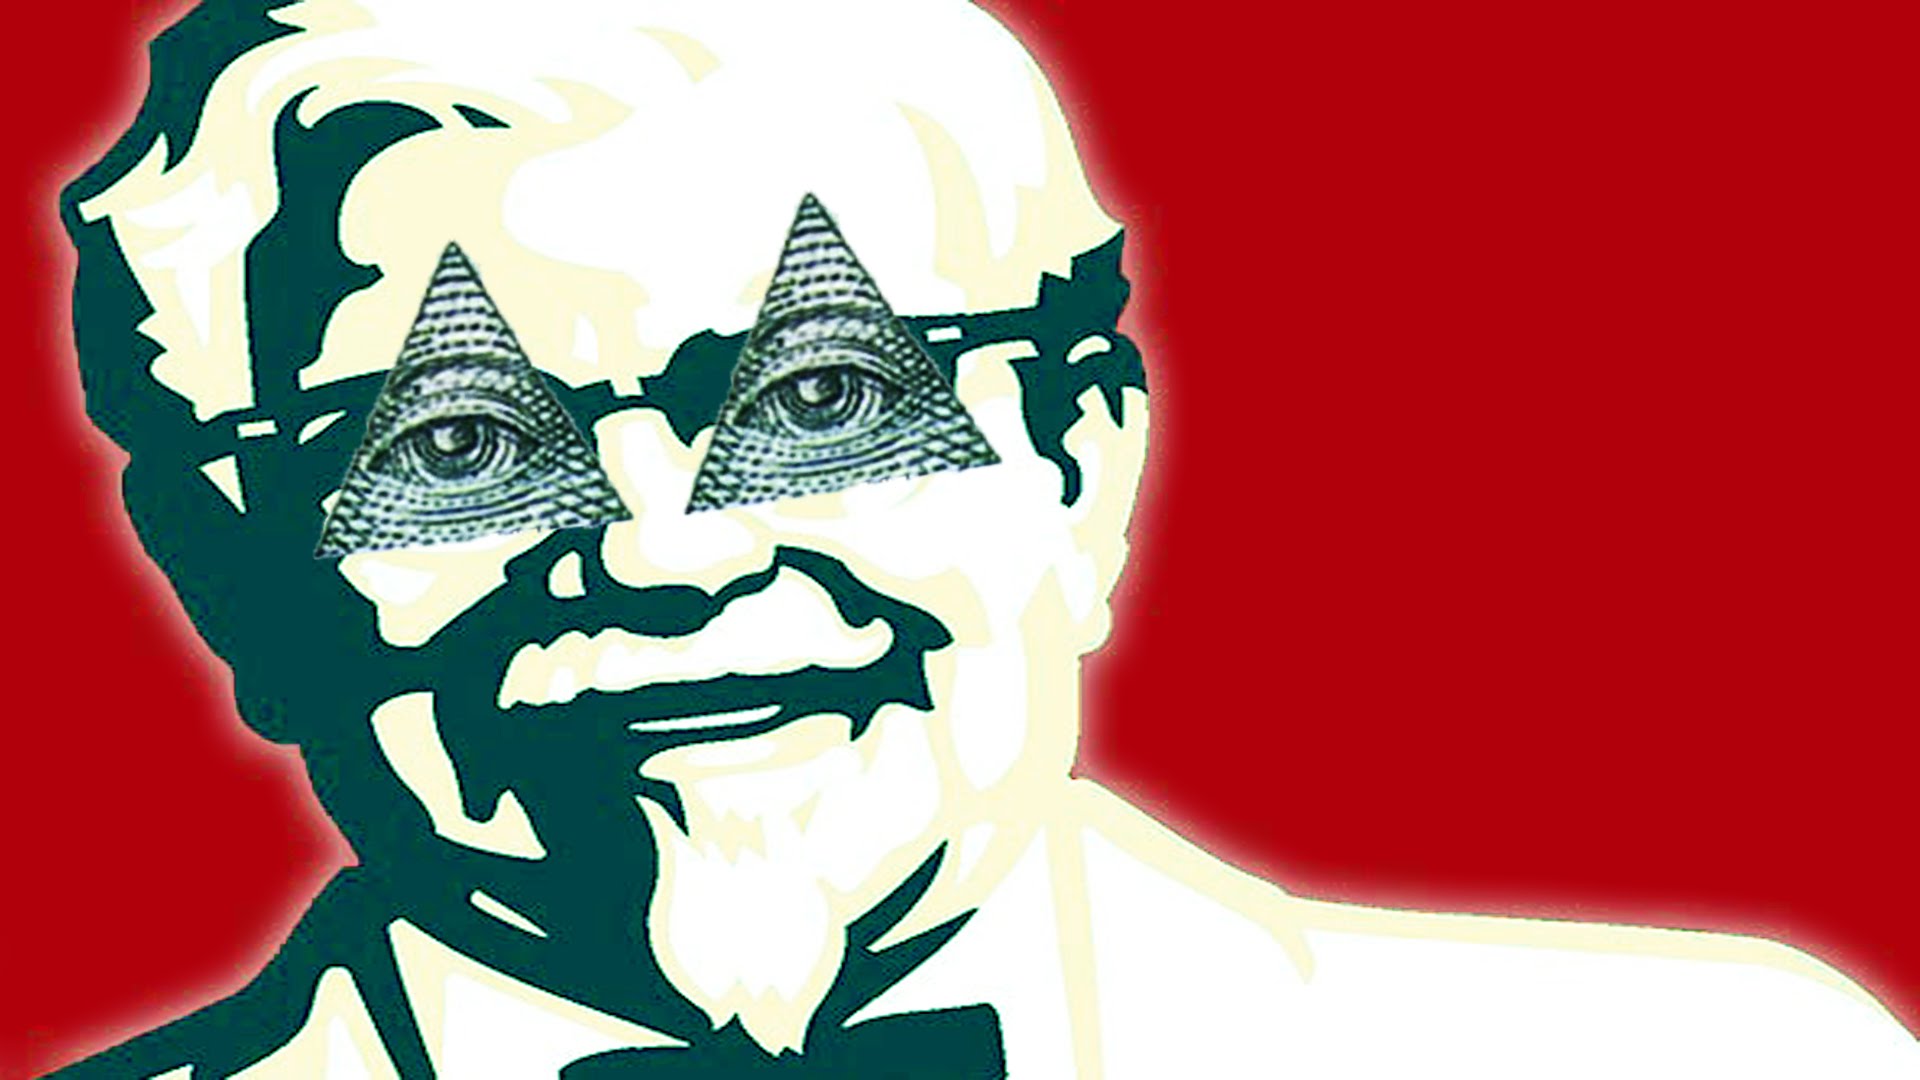 KFC is Illuminati